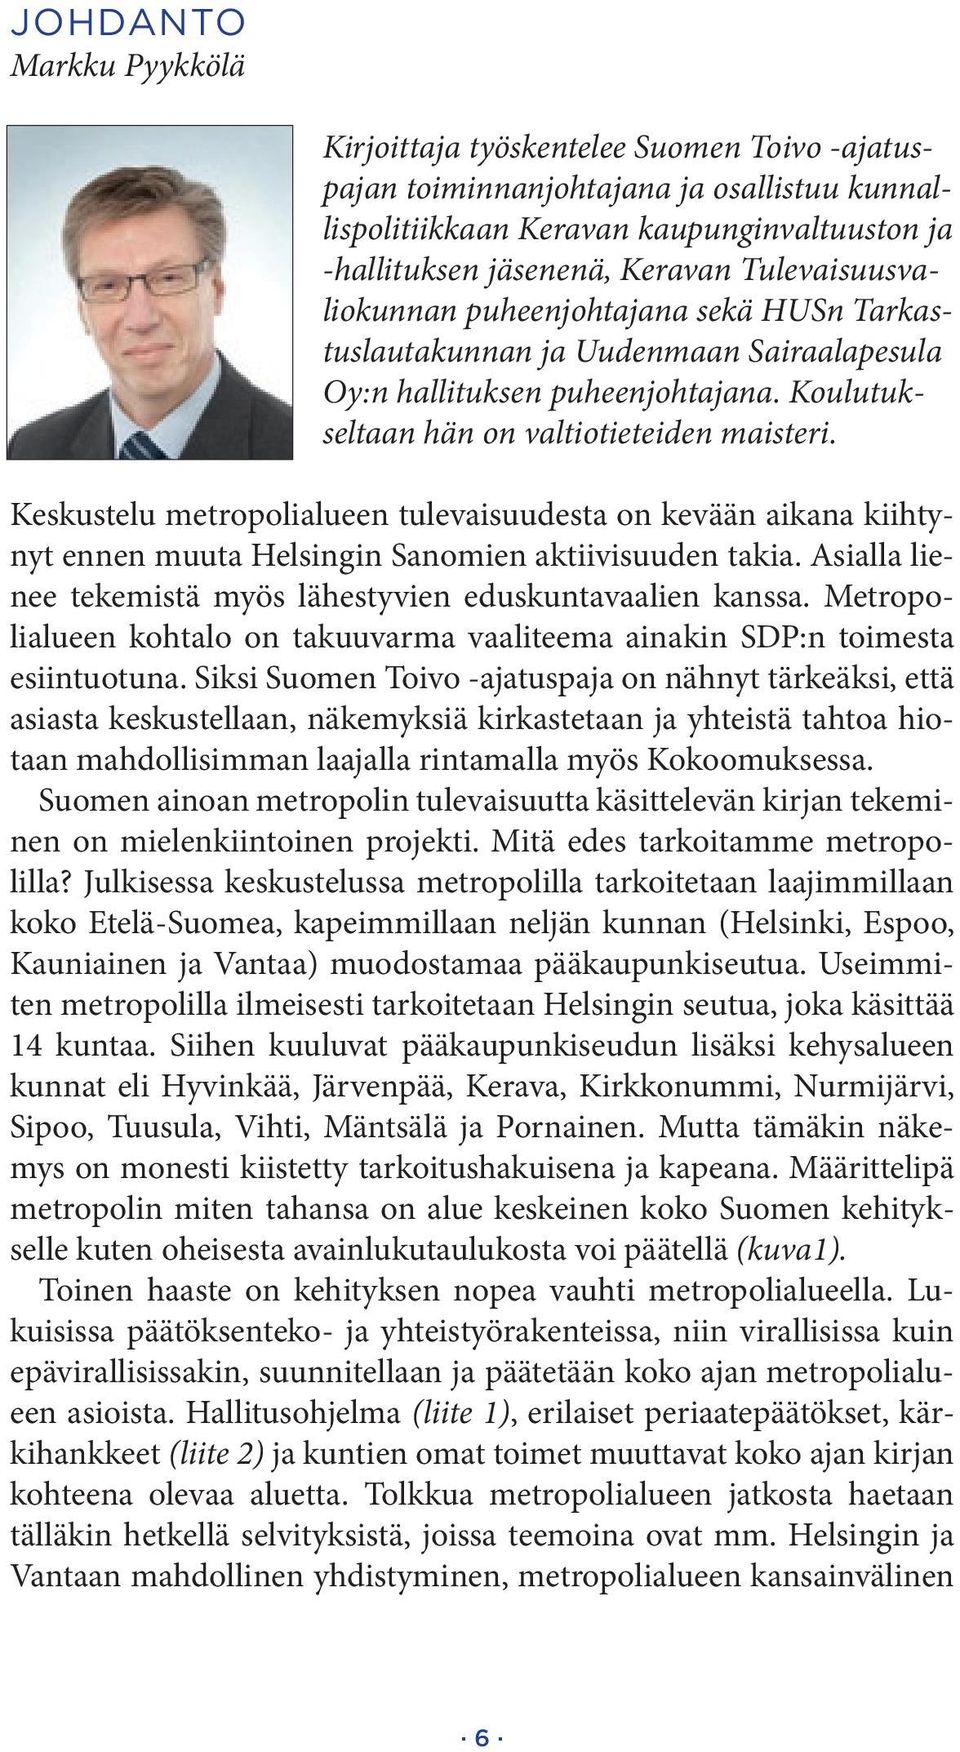 Keskustelu metropolialueen tulevaisuudesta on kevään aikana kiihtynyt ennen muuta Helsingin Sanomien aktiivisuuden takia. Asialla lienee tekemistä myös lähestyvien eduskuntavaalien kanssa.